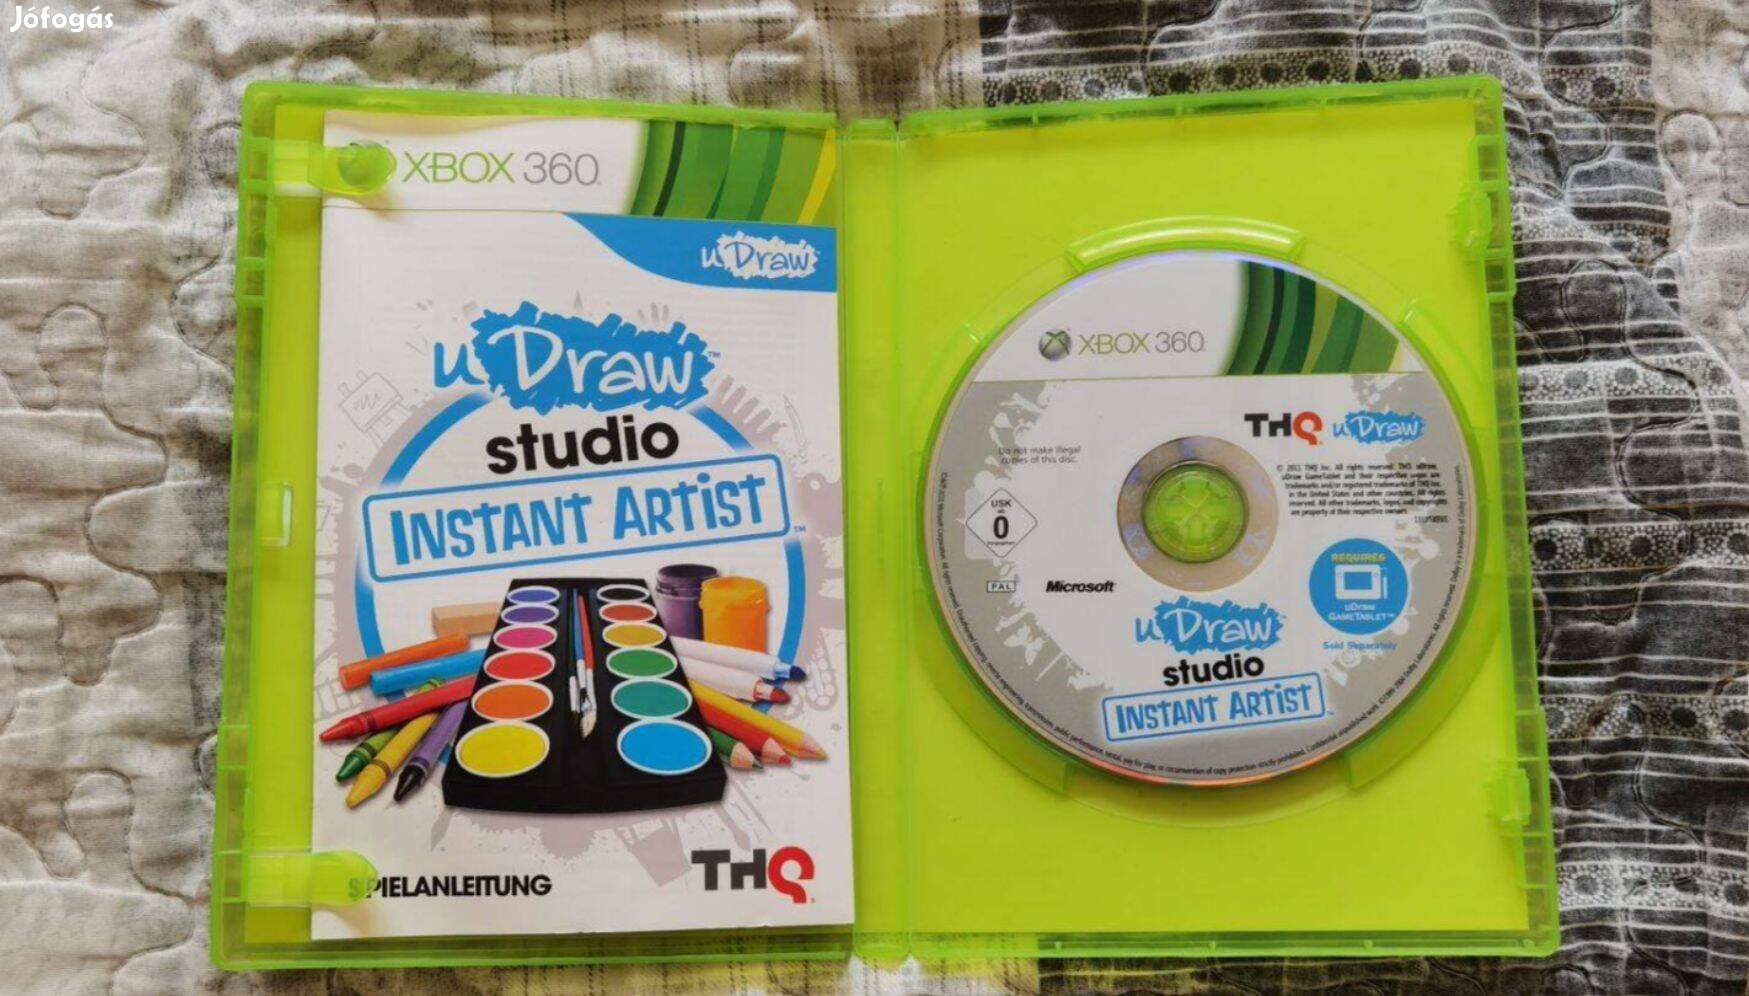 Udraw studio xbox 360 játék (game only)